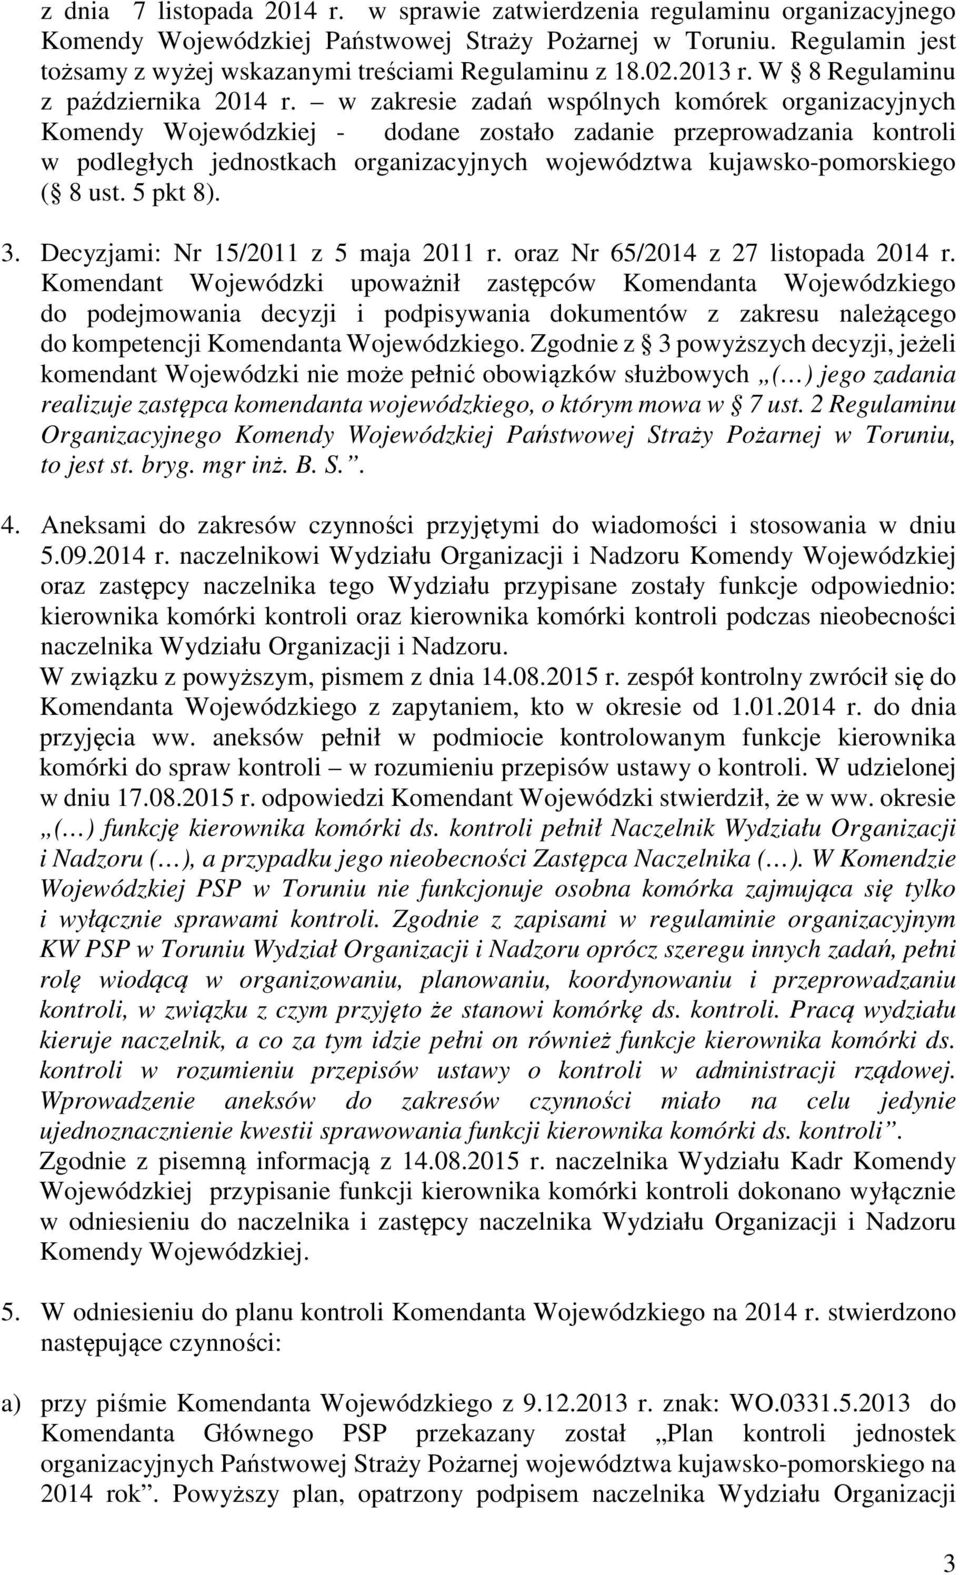 w zakresie zadań wspólnych komórek organizacyjnych Komendy Wojewódzkiej - dodane zostało zadanie przeprowadzania kontroli w podległych jednostkach organizacyjnych województwa kujawsko-pomorskiego ( 8